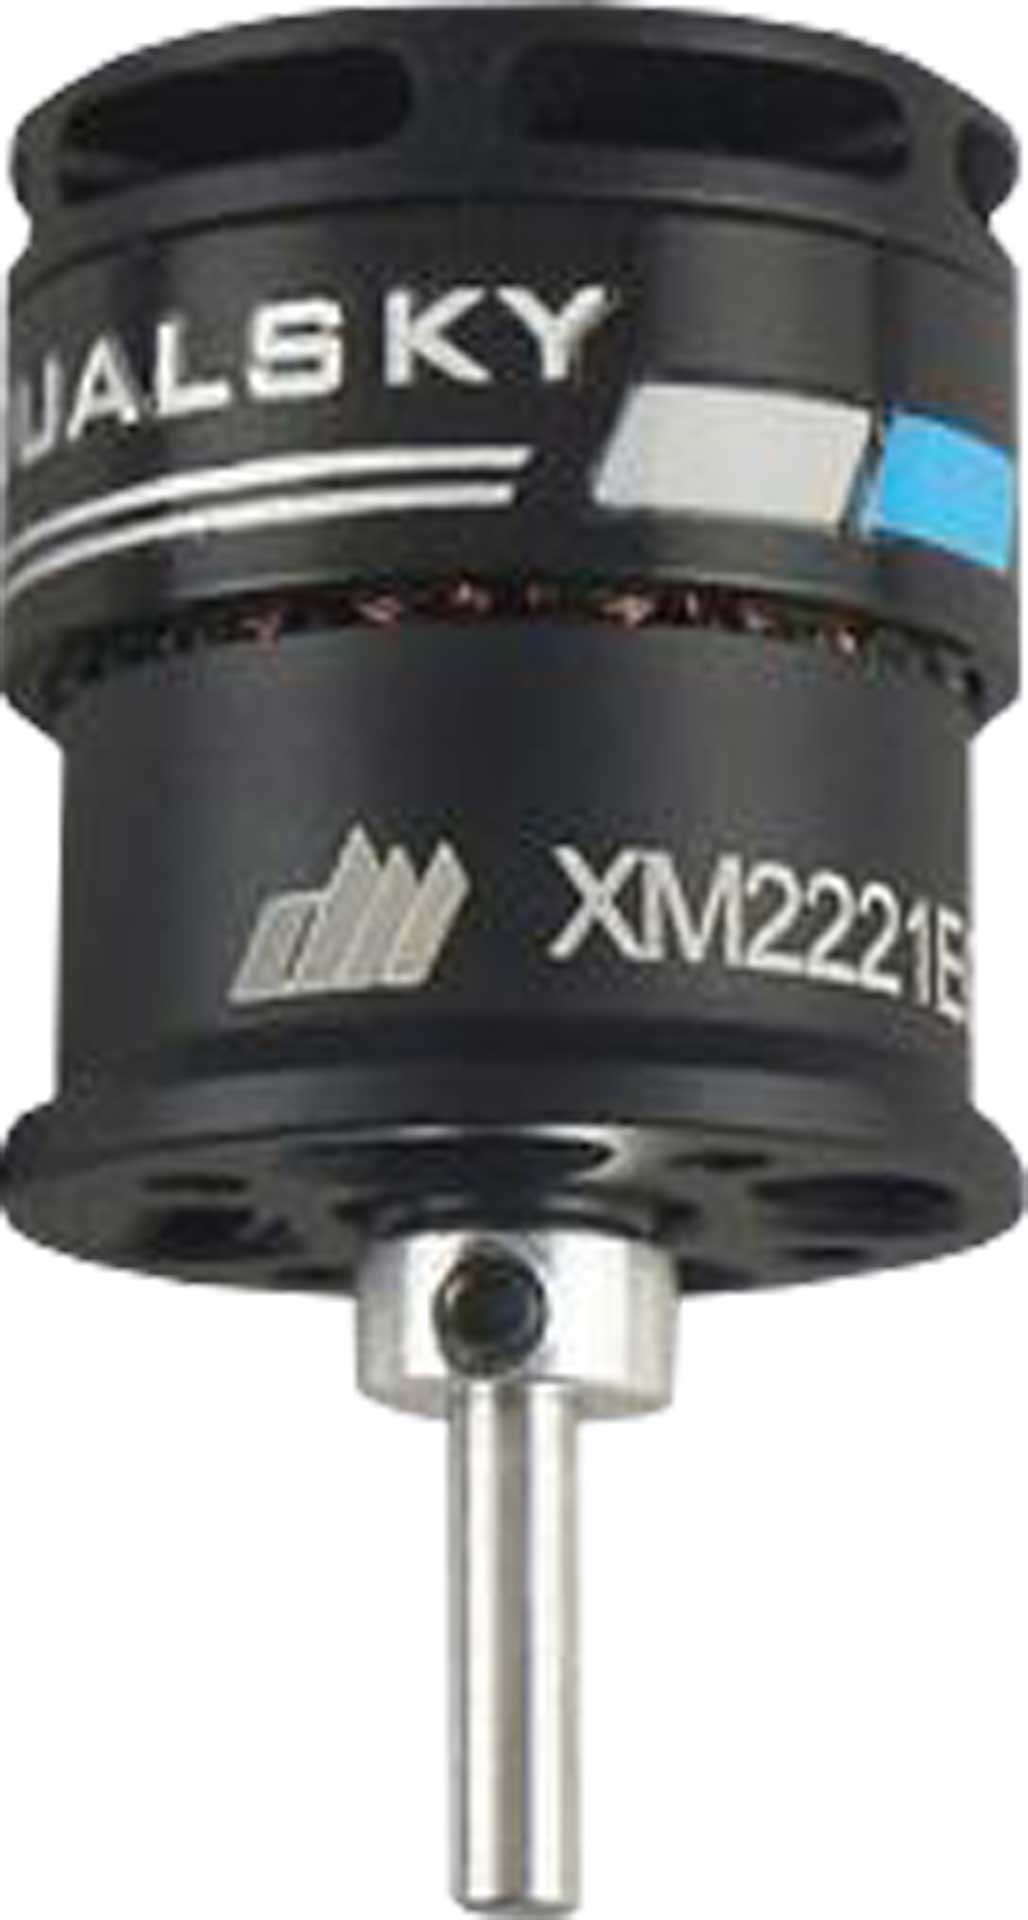 DUALSKY XMotor XM2221EG-28 K/V 2300 104W Brushless Motor